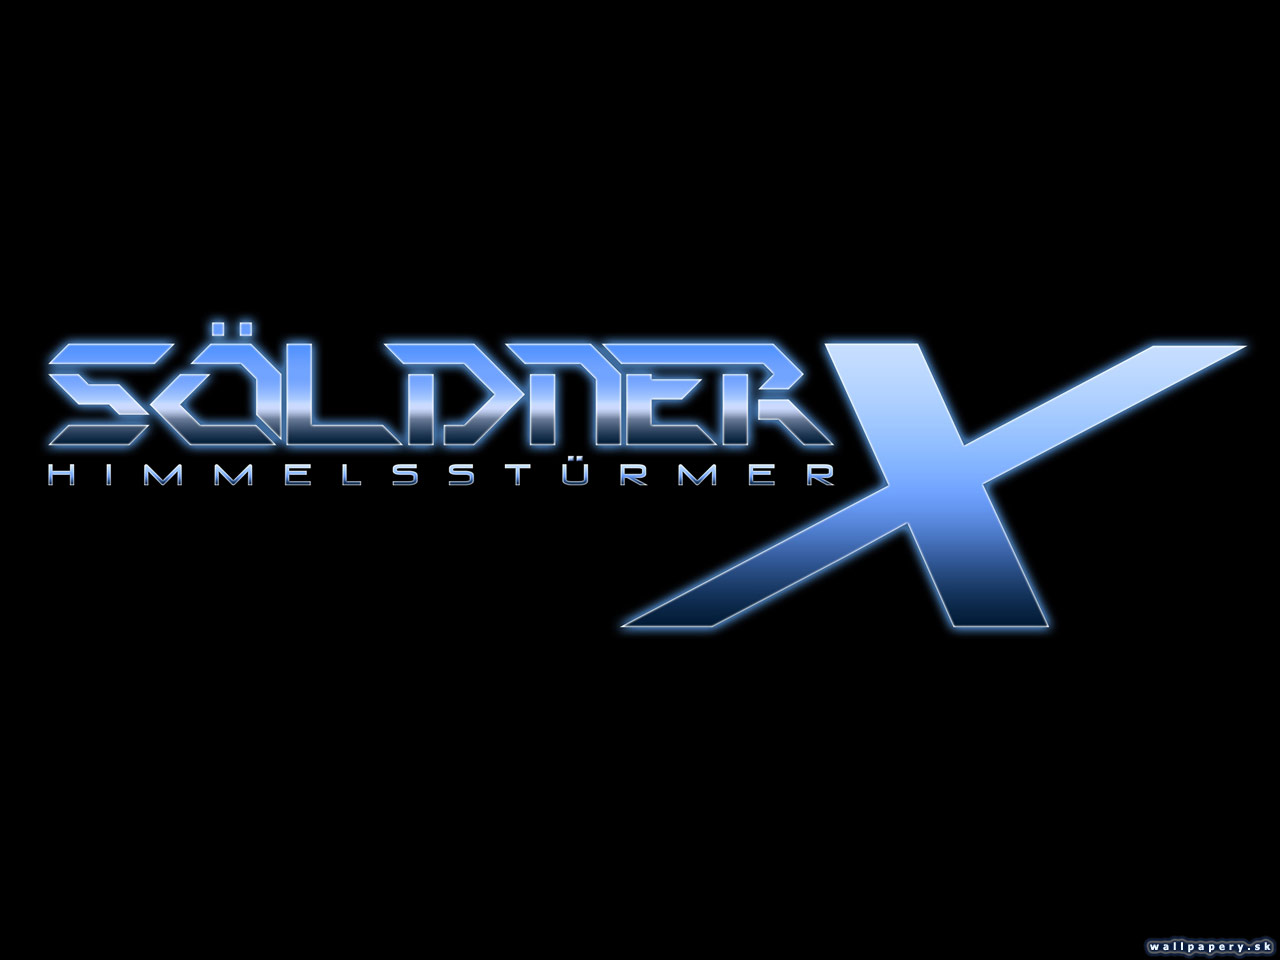 Sldner-X: Himmelsstrmer - wallpaper 3